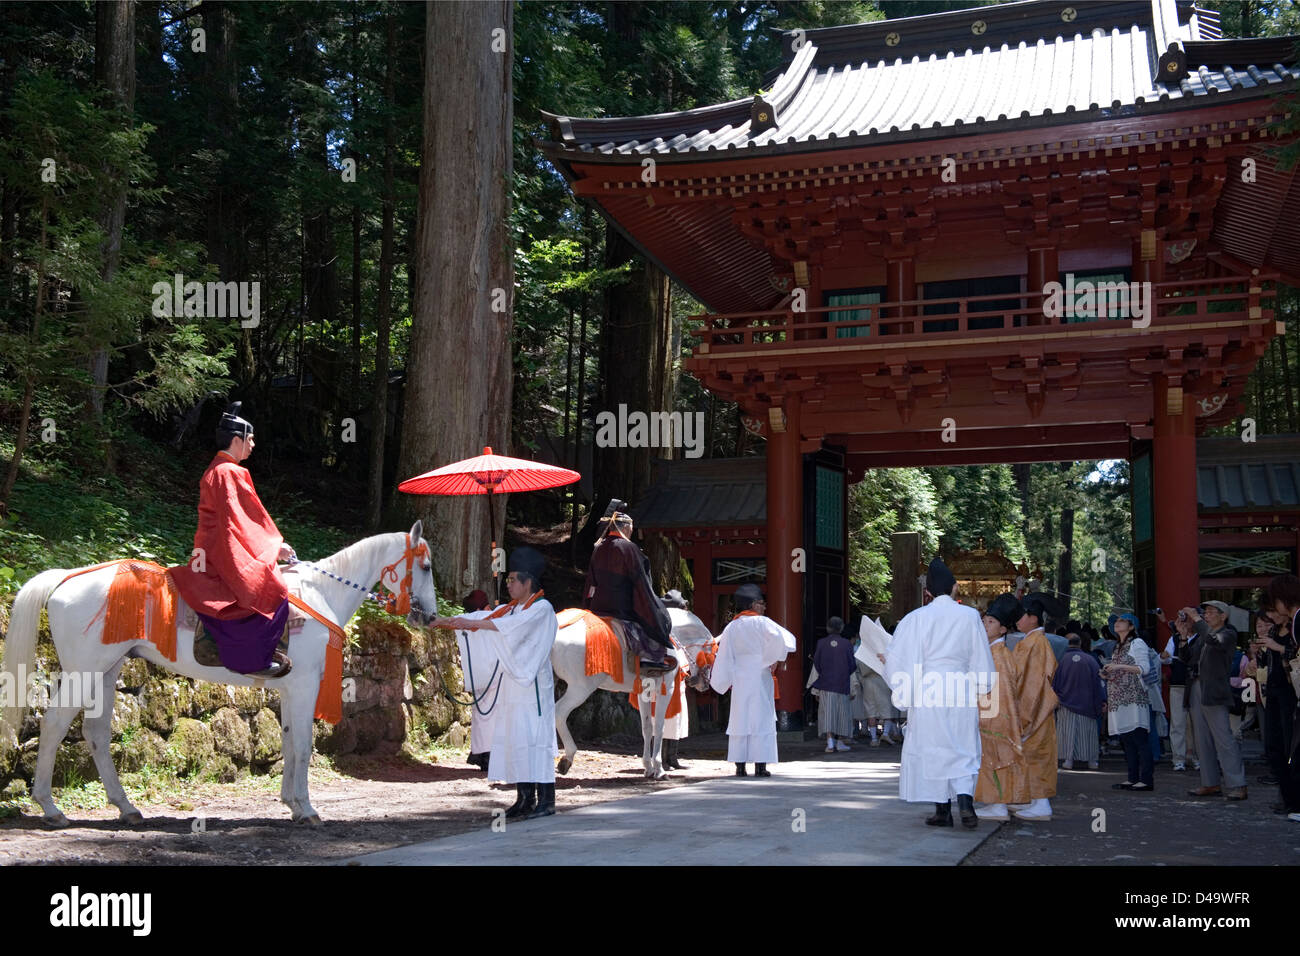 Festival procession moves through a gate at Futarasan Shrine for the annual spring Shunki Reitaisai in Nikko, Tochigi, Japan. Stock Photo